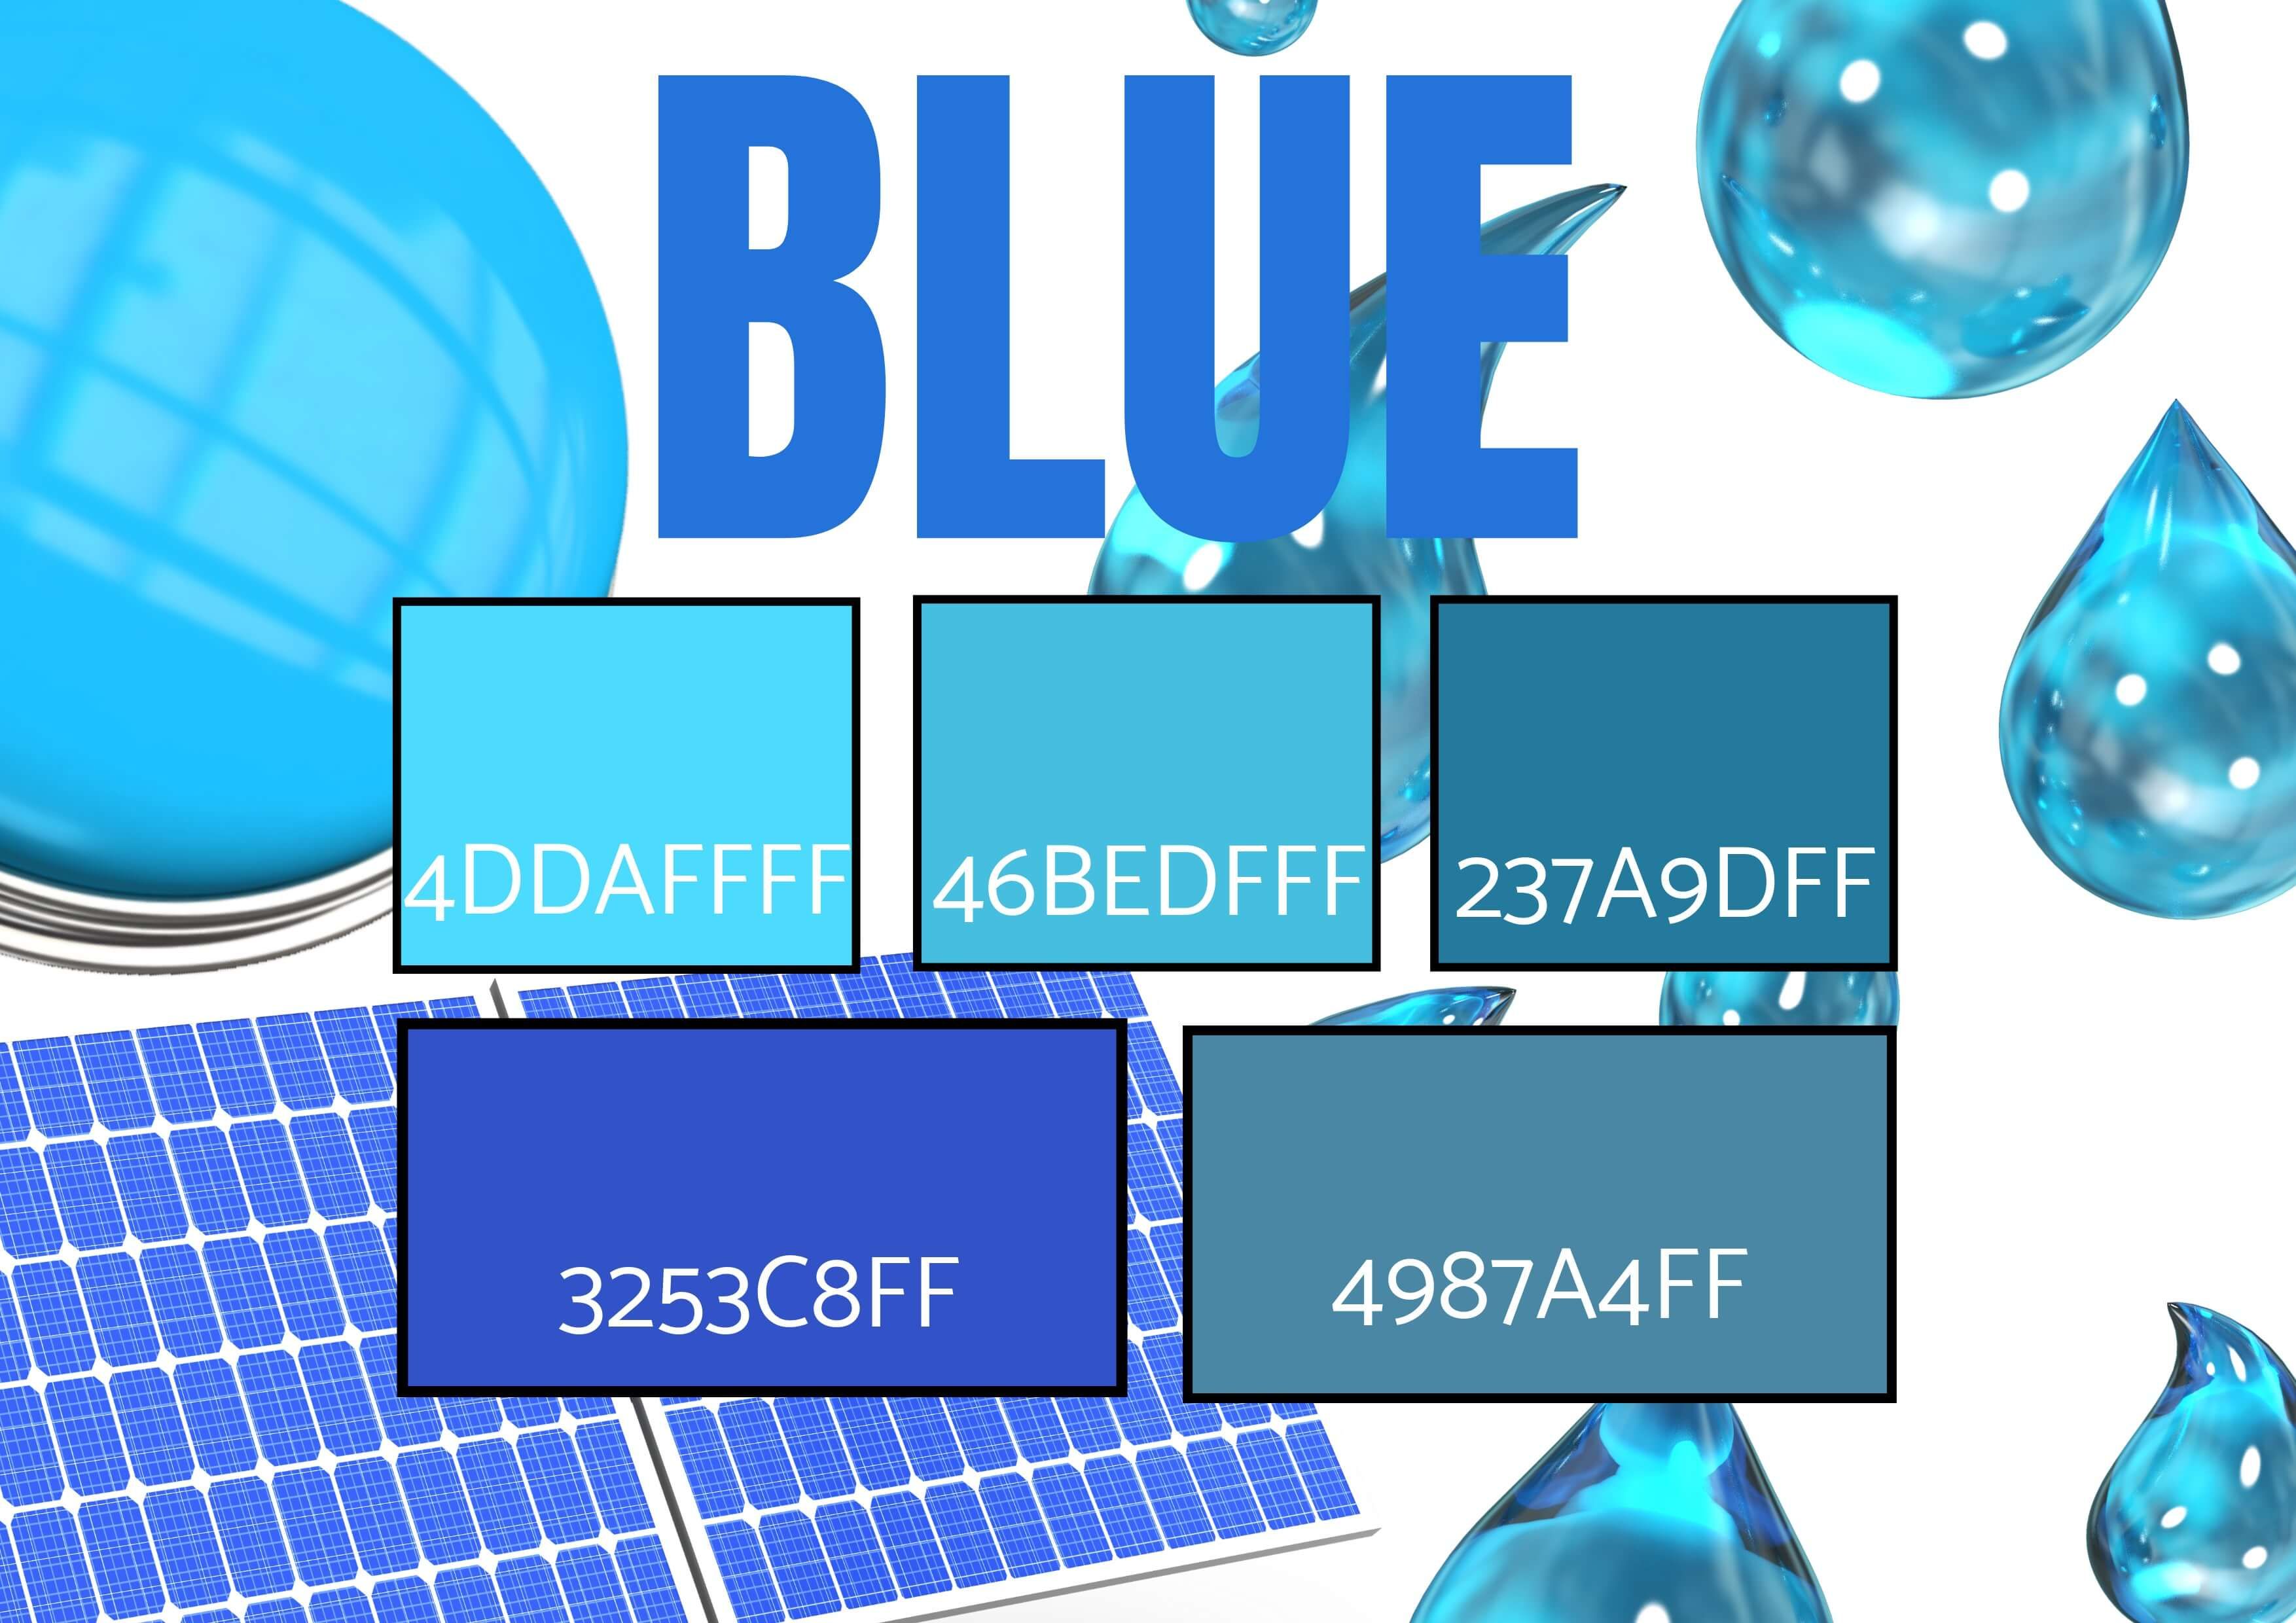 Auswahl von 5 Blautönen mit Bildern von Wassertropfen, einem Knopf und einem Solarpanel – Symbolik